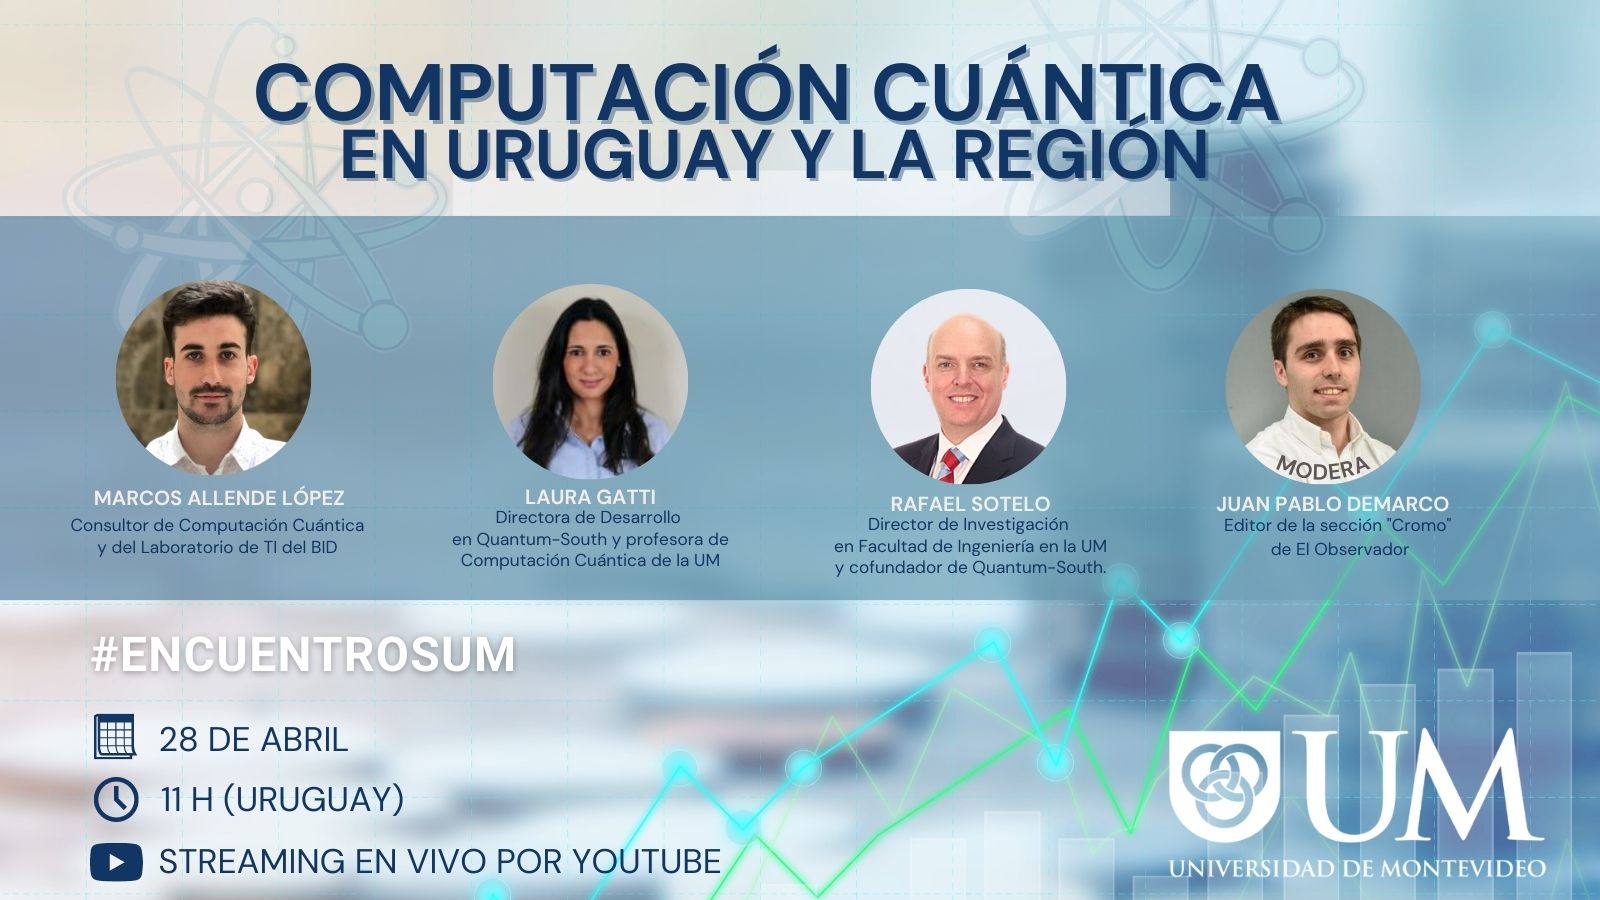 Computación cuántica en Uruguay y la región